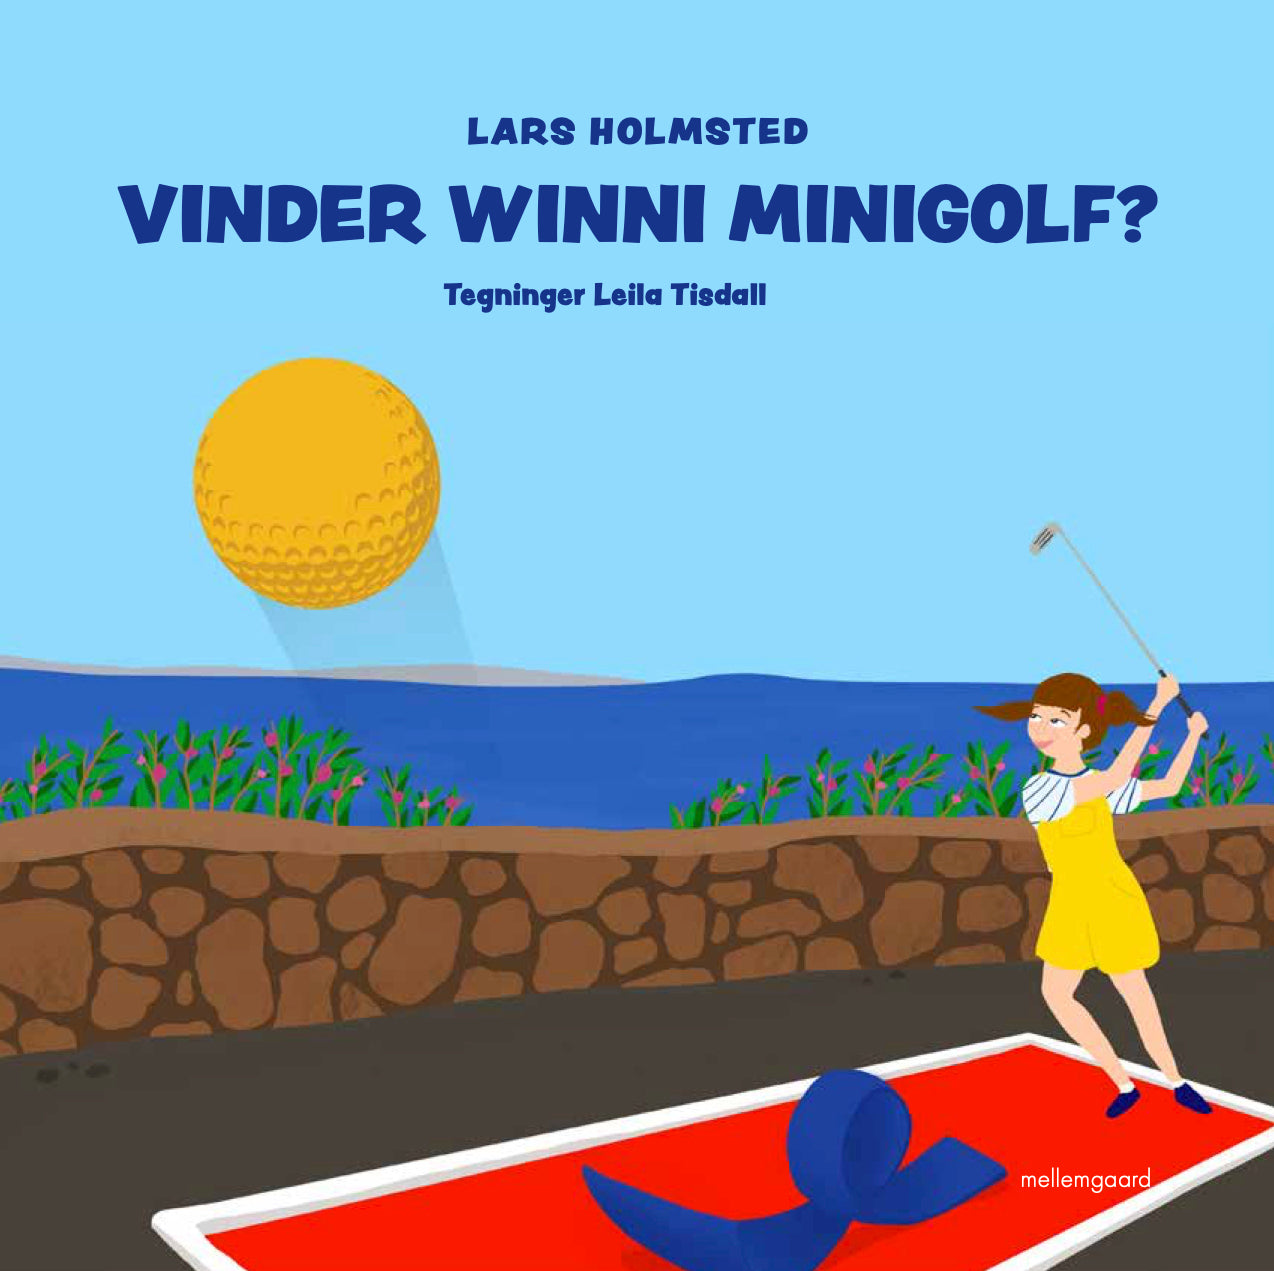 Will Winni Minigolf win?